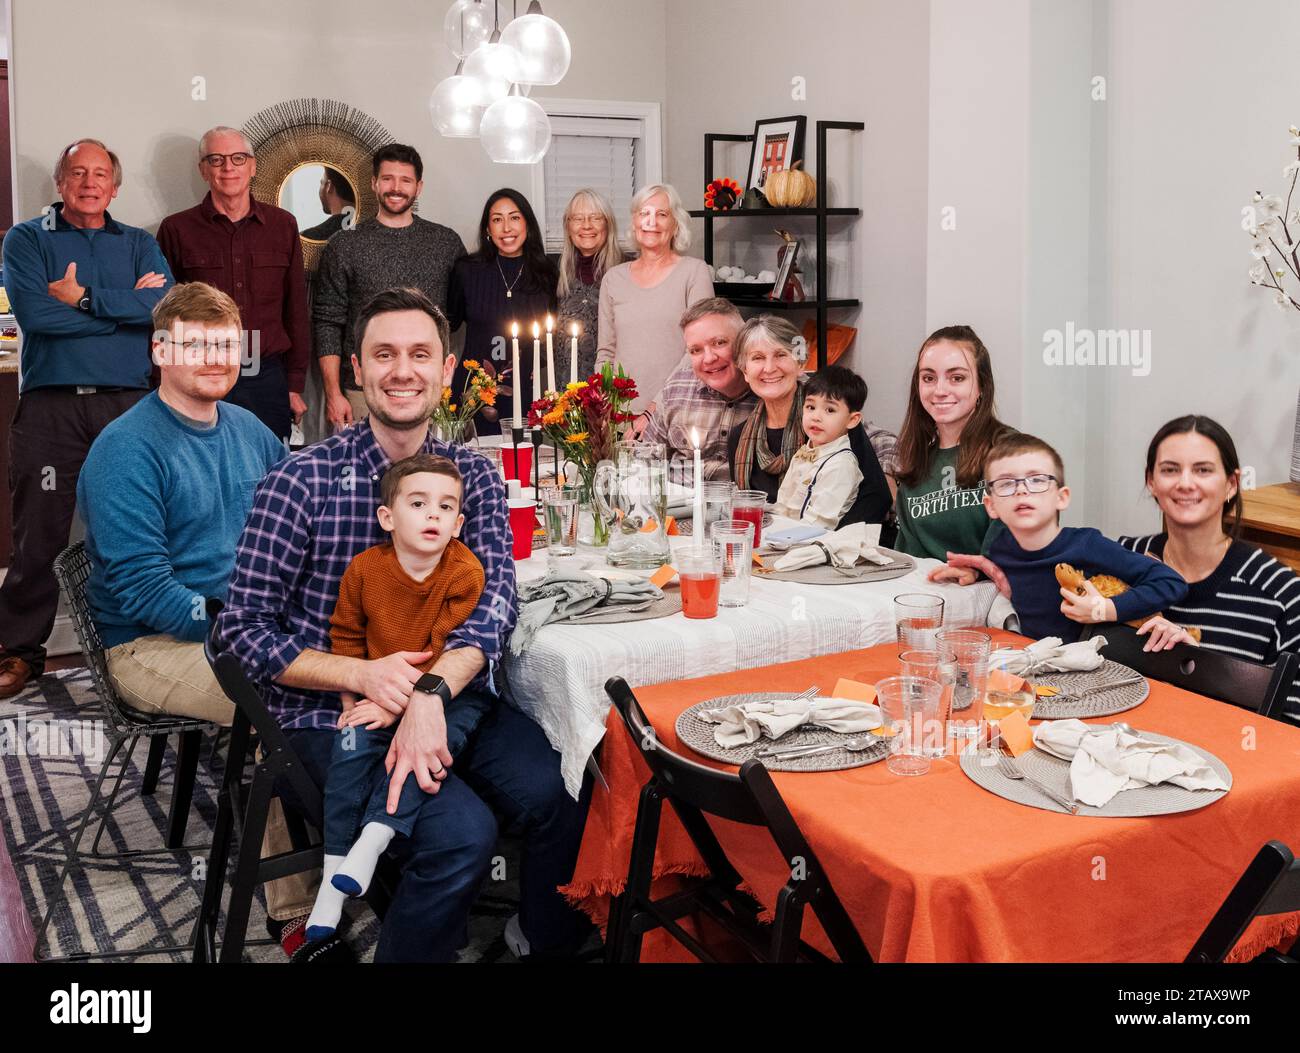 Das Porträt einer großen Familie, die sich zum Thanksgiving Day Mahl versammelt hat Stockfoto